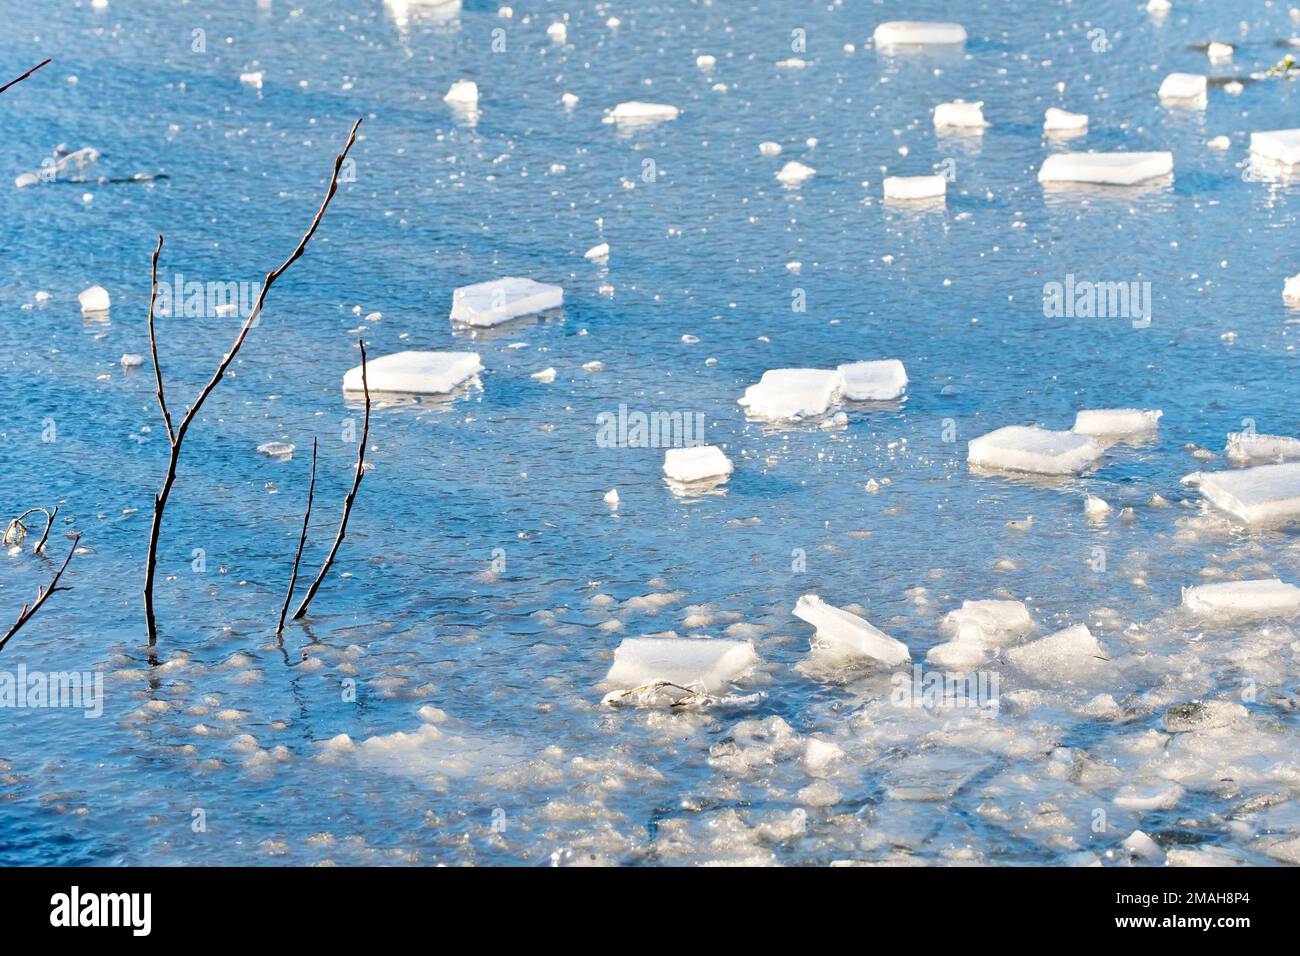 Uno stagno congelato, il ghiaccio che riflette il cielo blu sopra e coperto di pezzi di ghiaccio rotto dal bordo. Rami di albero poke attraverso la superficie. Foto Stock